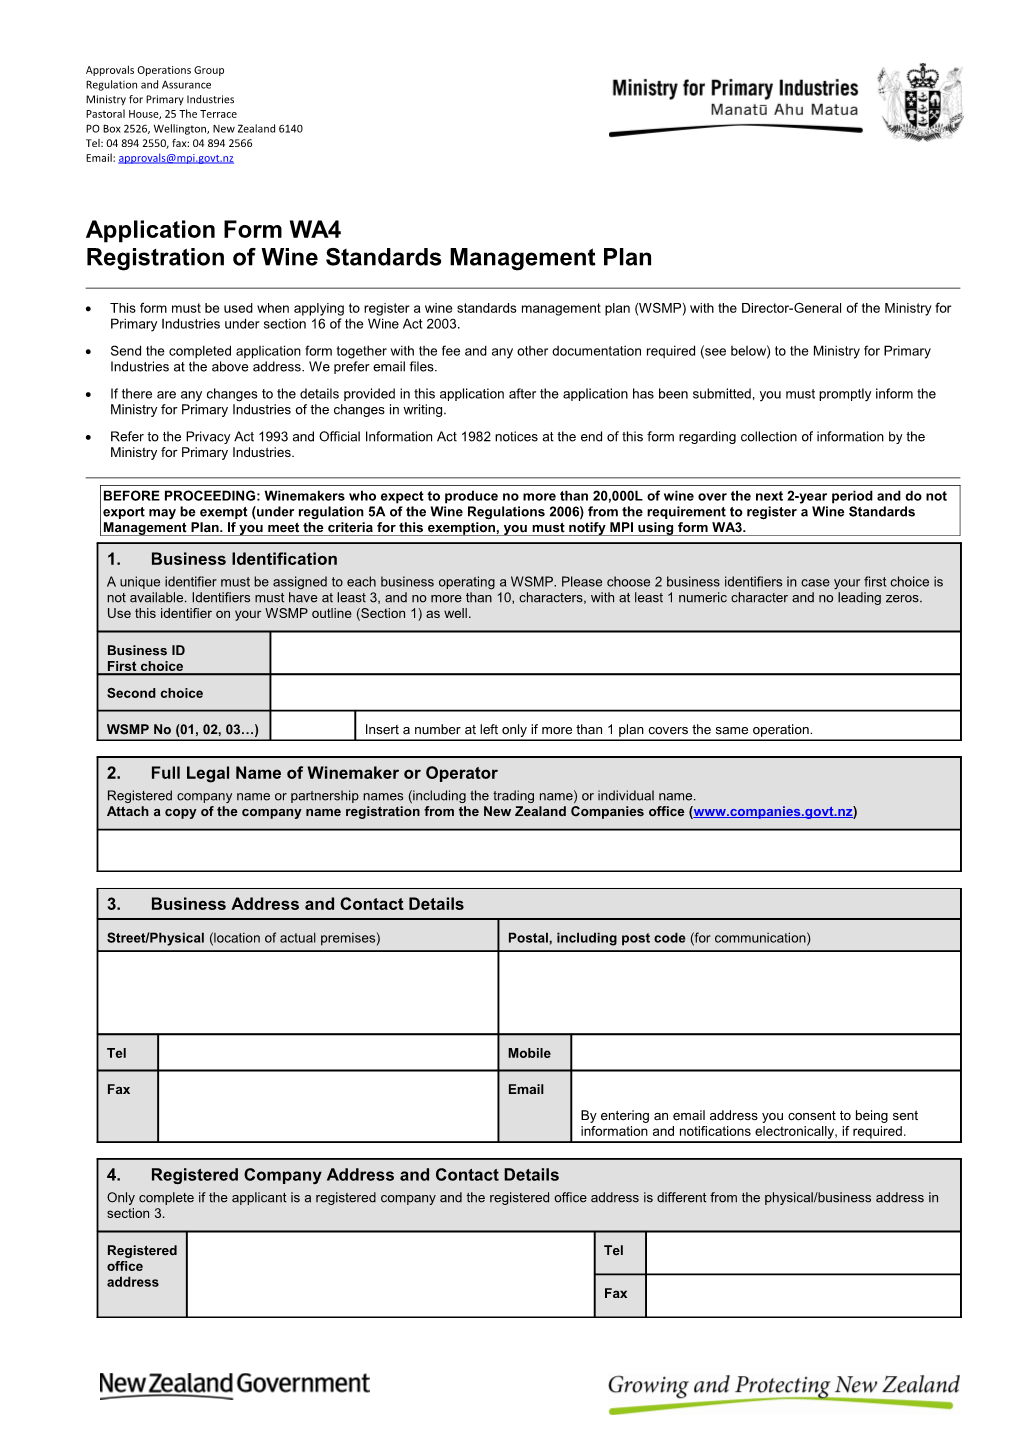 Application Form W-1: Registration of Wine Standards Management Plan